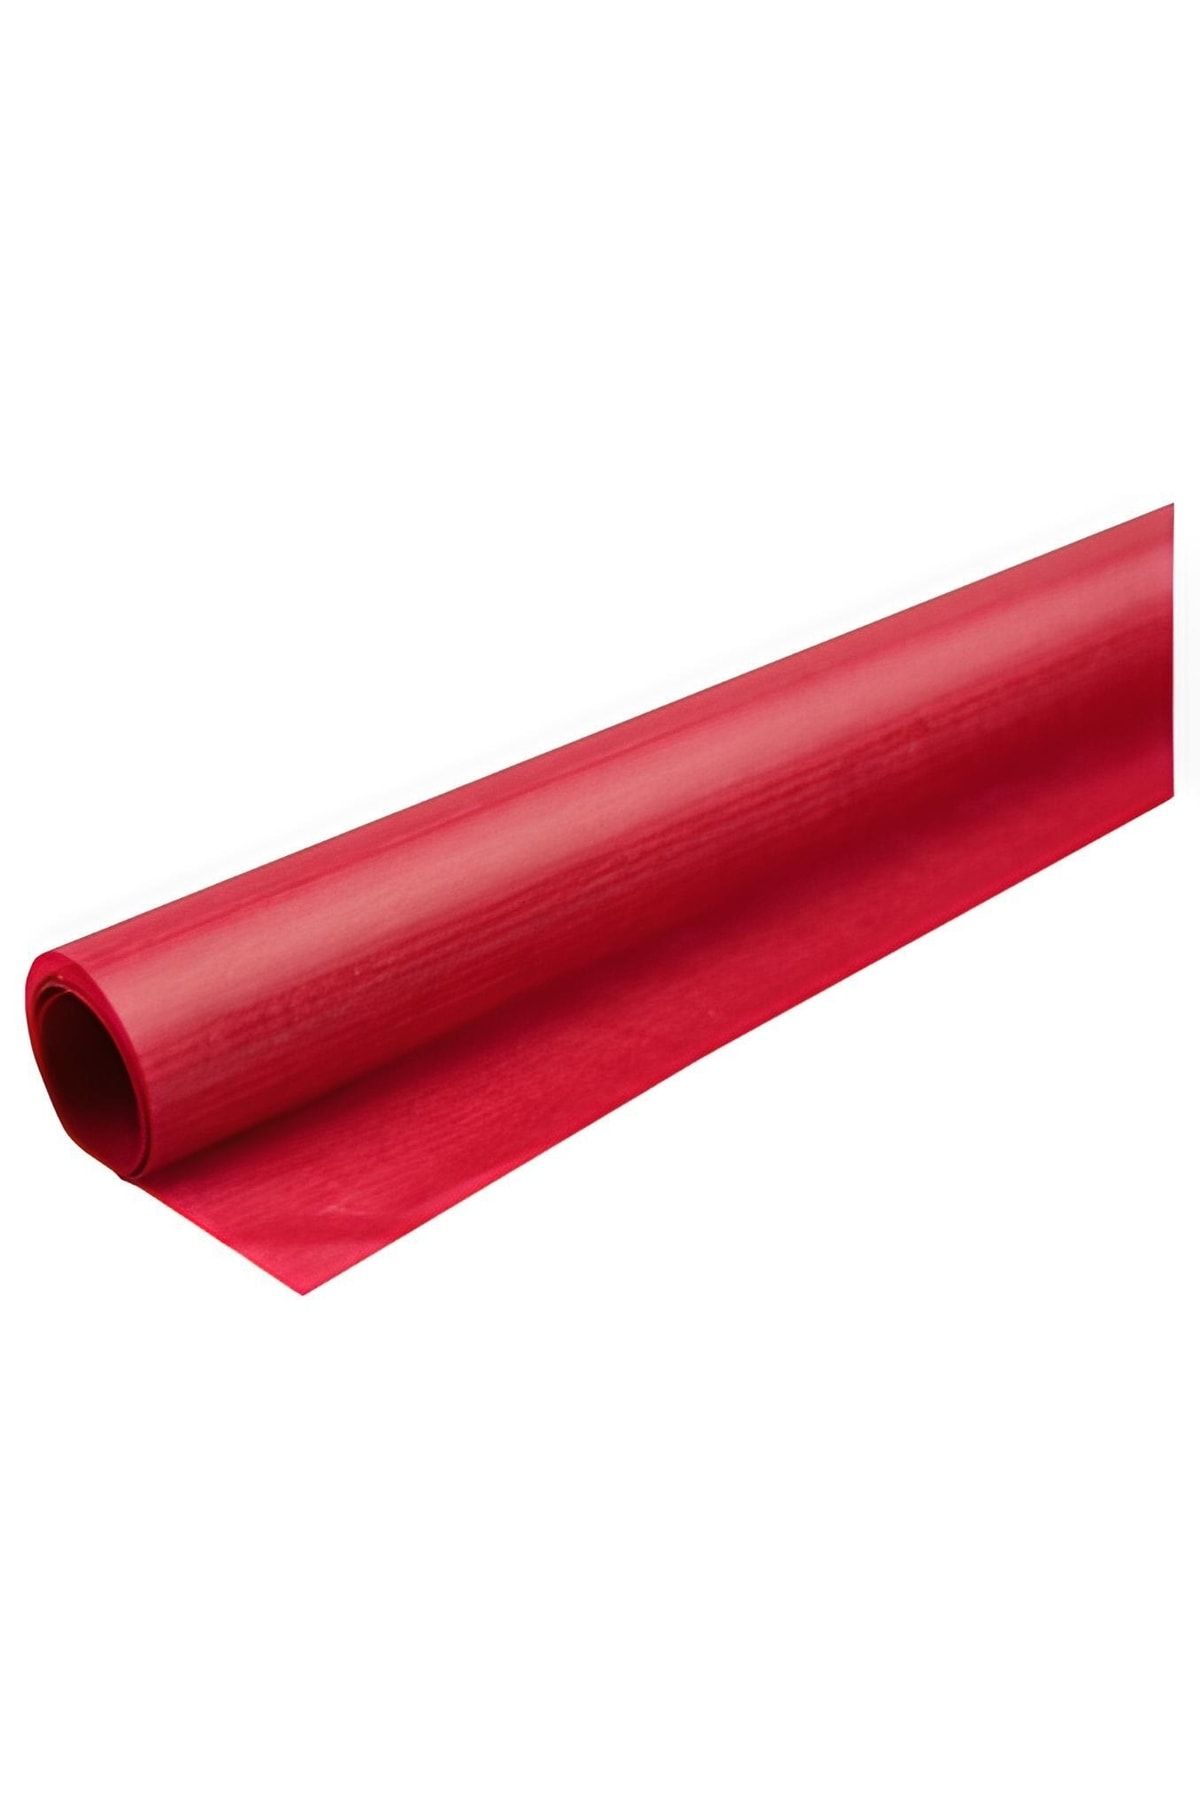 roco paper Uçurtma Kağıdı 42 Gr/m. - Kırmızı 70*100 Cm